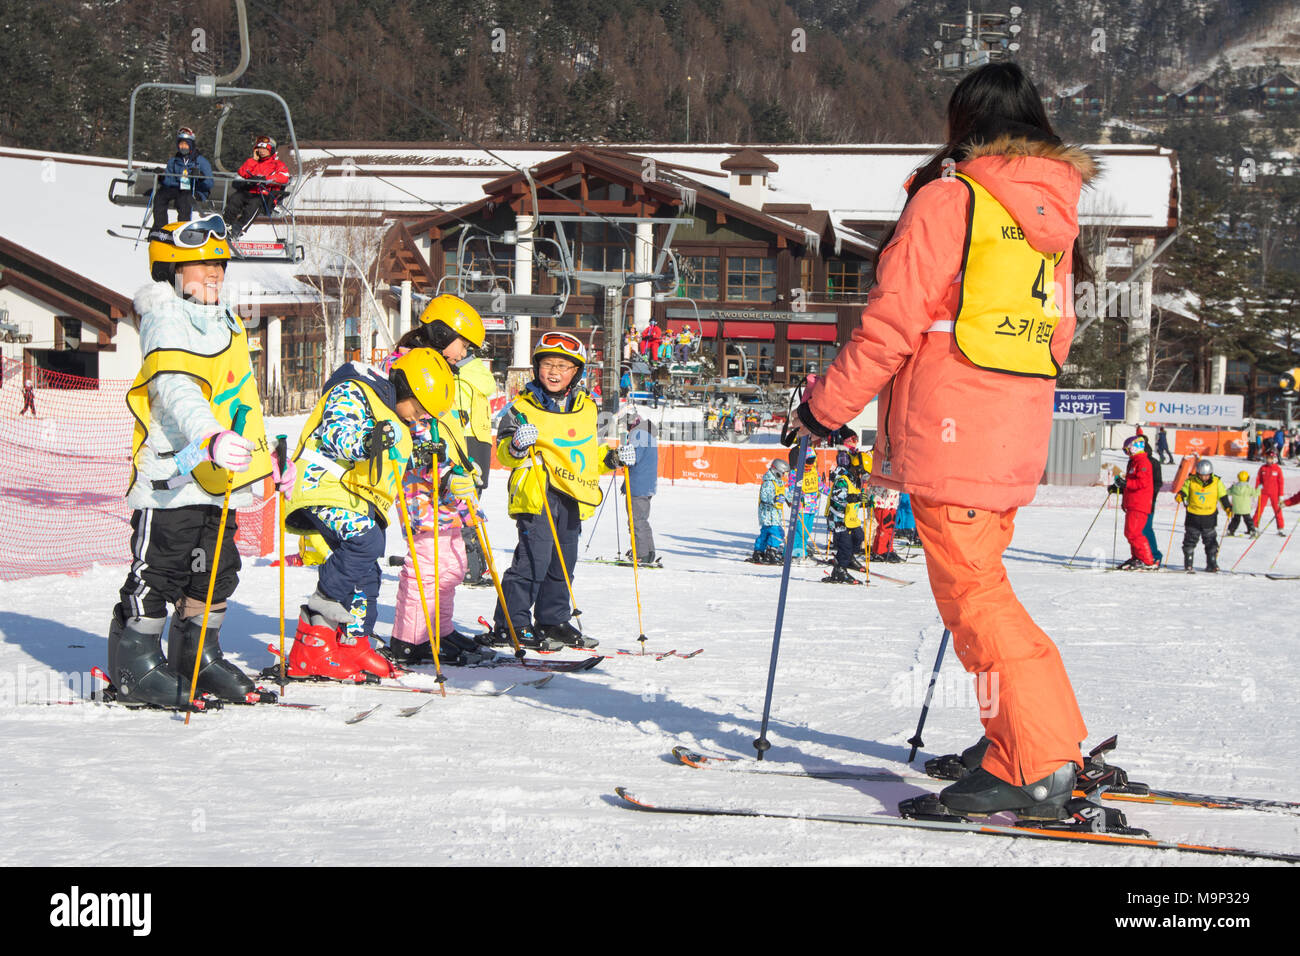 Un maestro di sci e un gruppo di bambini asiatici in un coniglietto pendenza di Yongpyong. Yongpyong (Dragon Valley) Ski Resort è una stazione sciistica in Corea del Sud, situato in Daegwallyeong-myeon, Pyeongchang, Gangwon-do. È il più grande sci e snowboard resort in Corea. Yongpyong ospiterà la tecnica sci alpino eventi per il 2018 Olimpiadi e Paraolimpiadi invernali di Pyeongchang. Alcune scene del 2002 Korean Broadcasting System dramma Sonata di Inverno sono state filmate presso il resort. Foto Stock